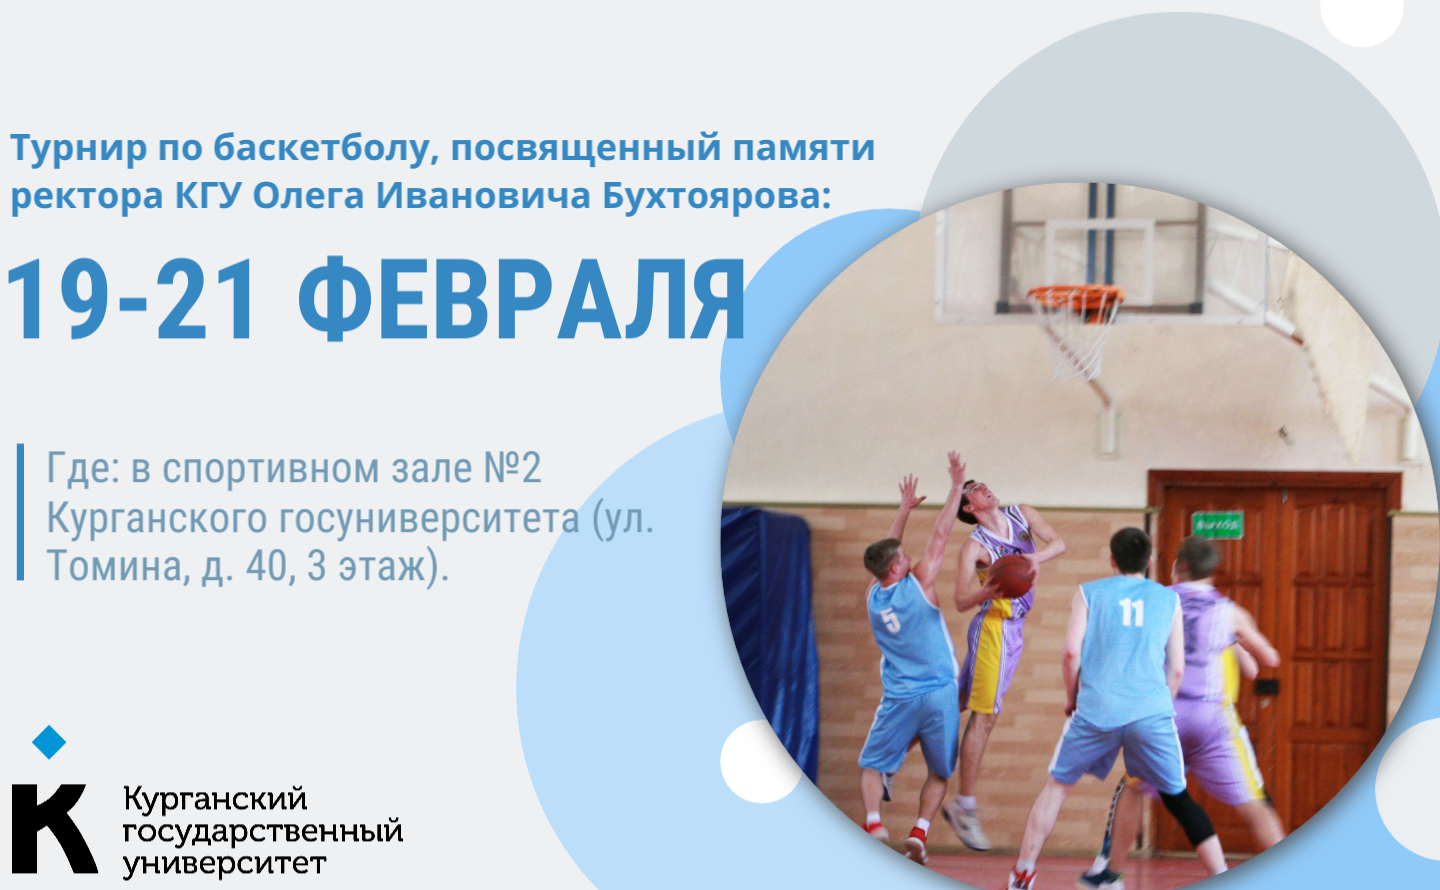  Традиционный турнир по баскетболу памяти ректора КГУ Бухтоярова пройдет с 19 по 21 февраля